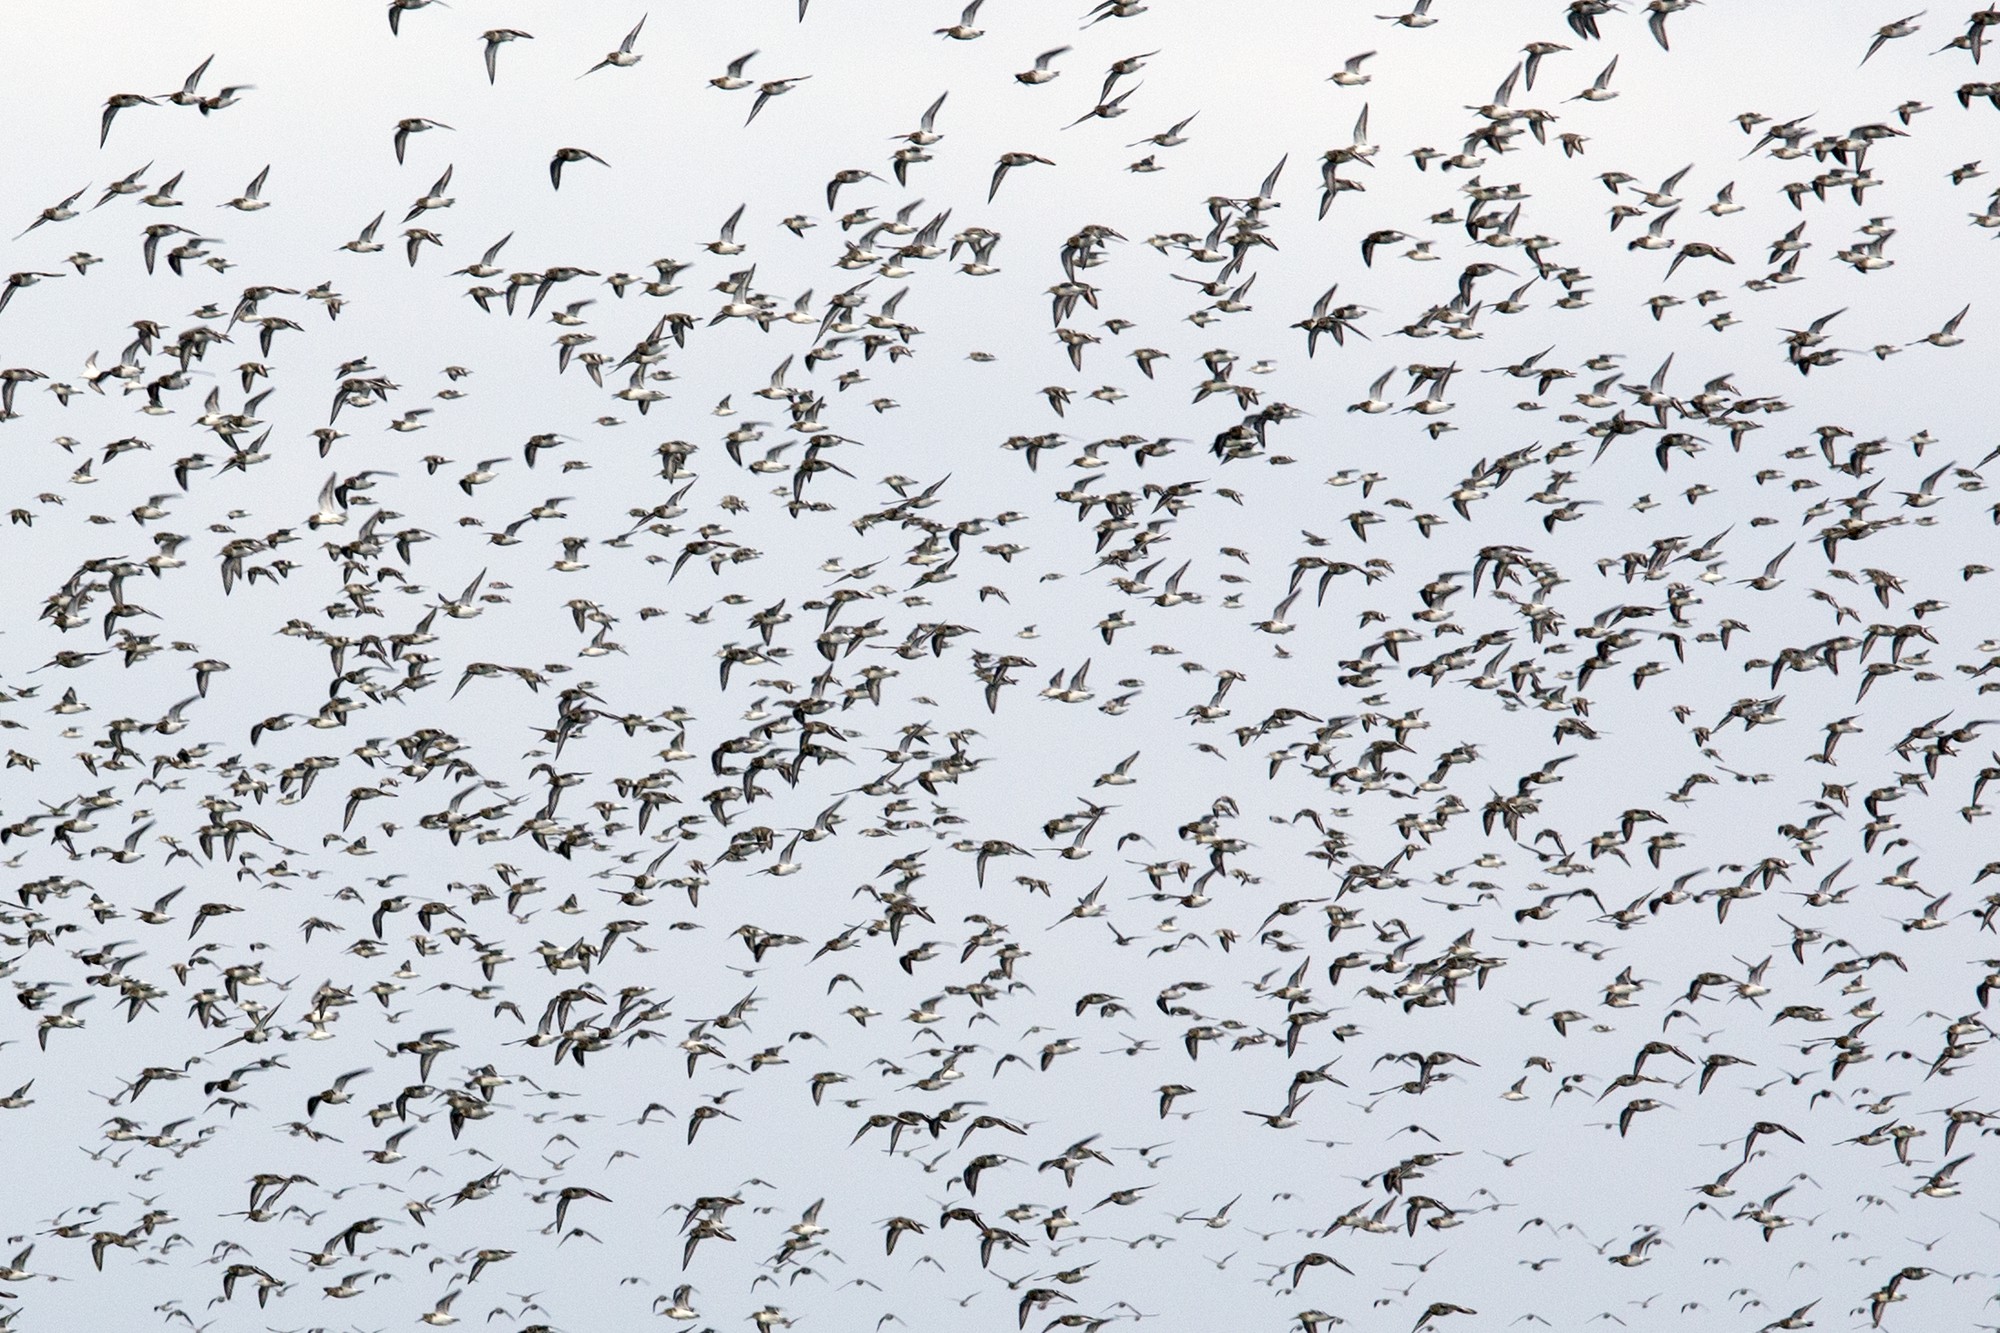 Types of Birds That Form Large Flocks Together